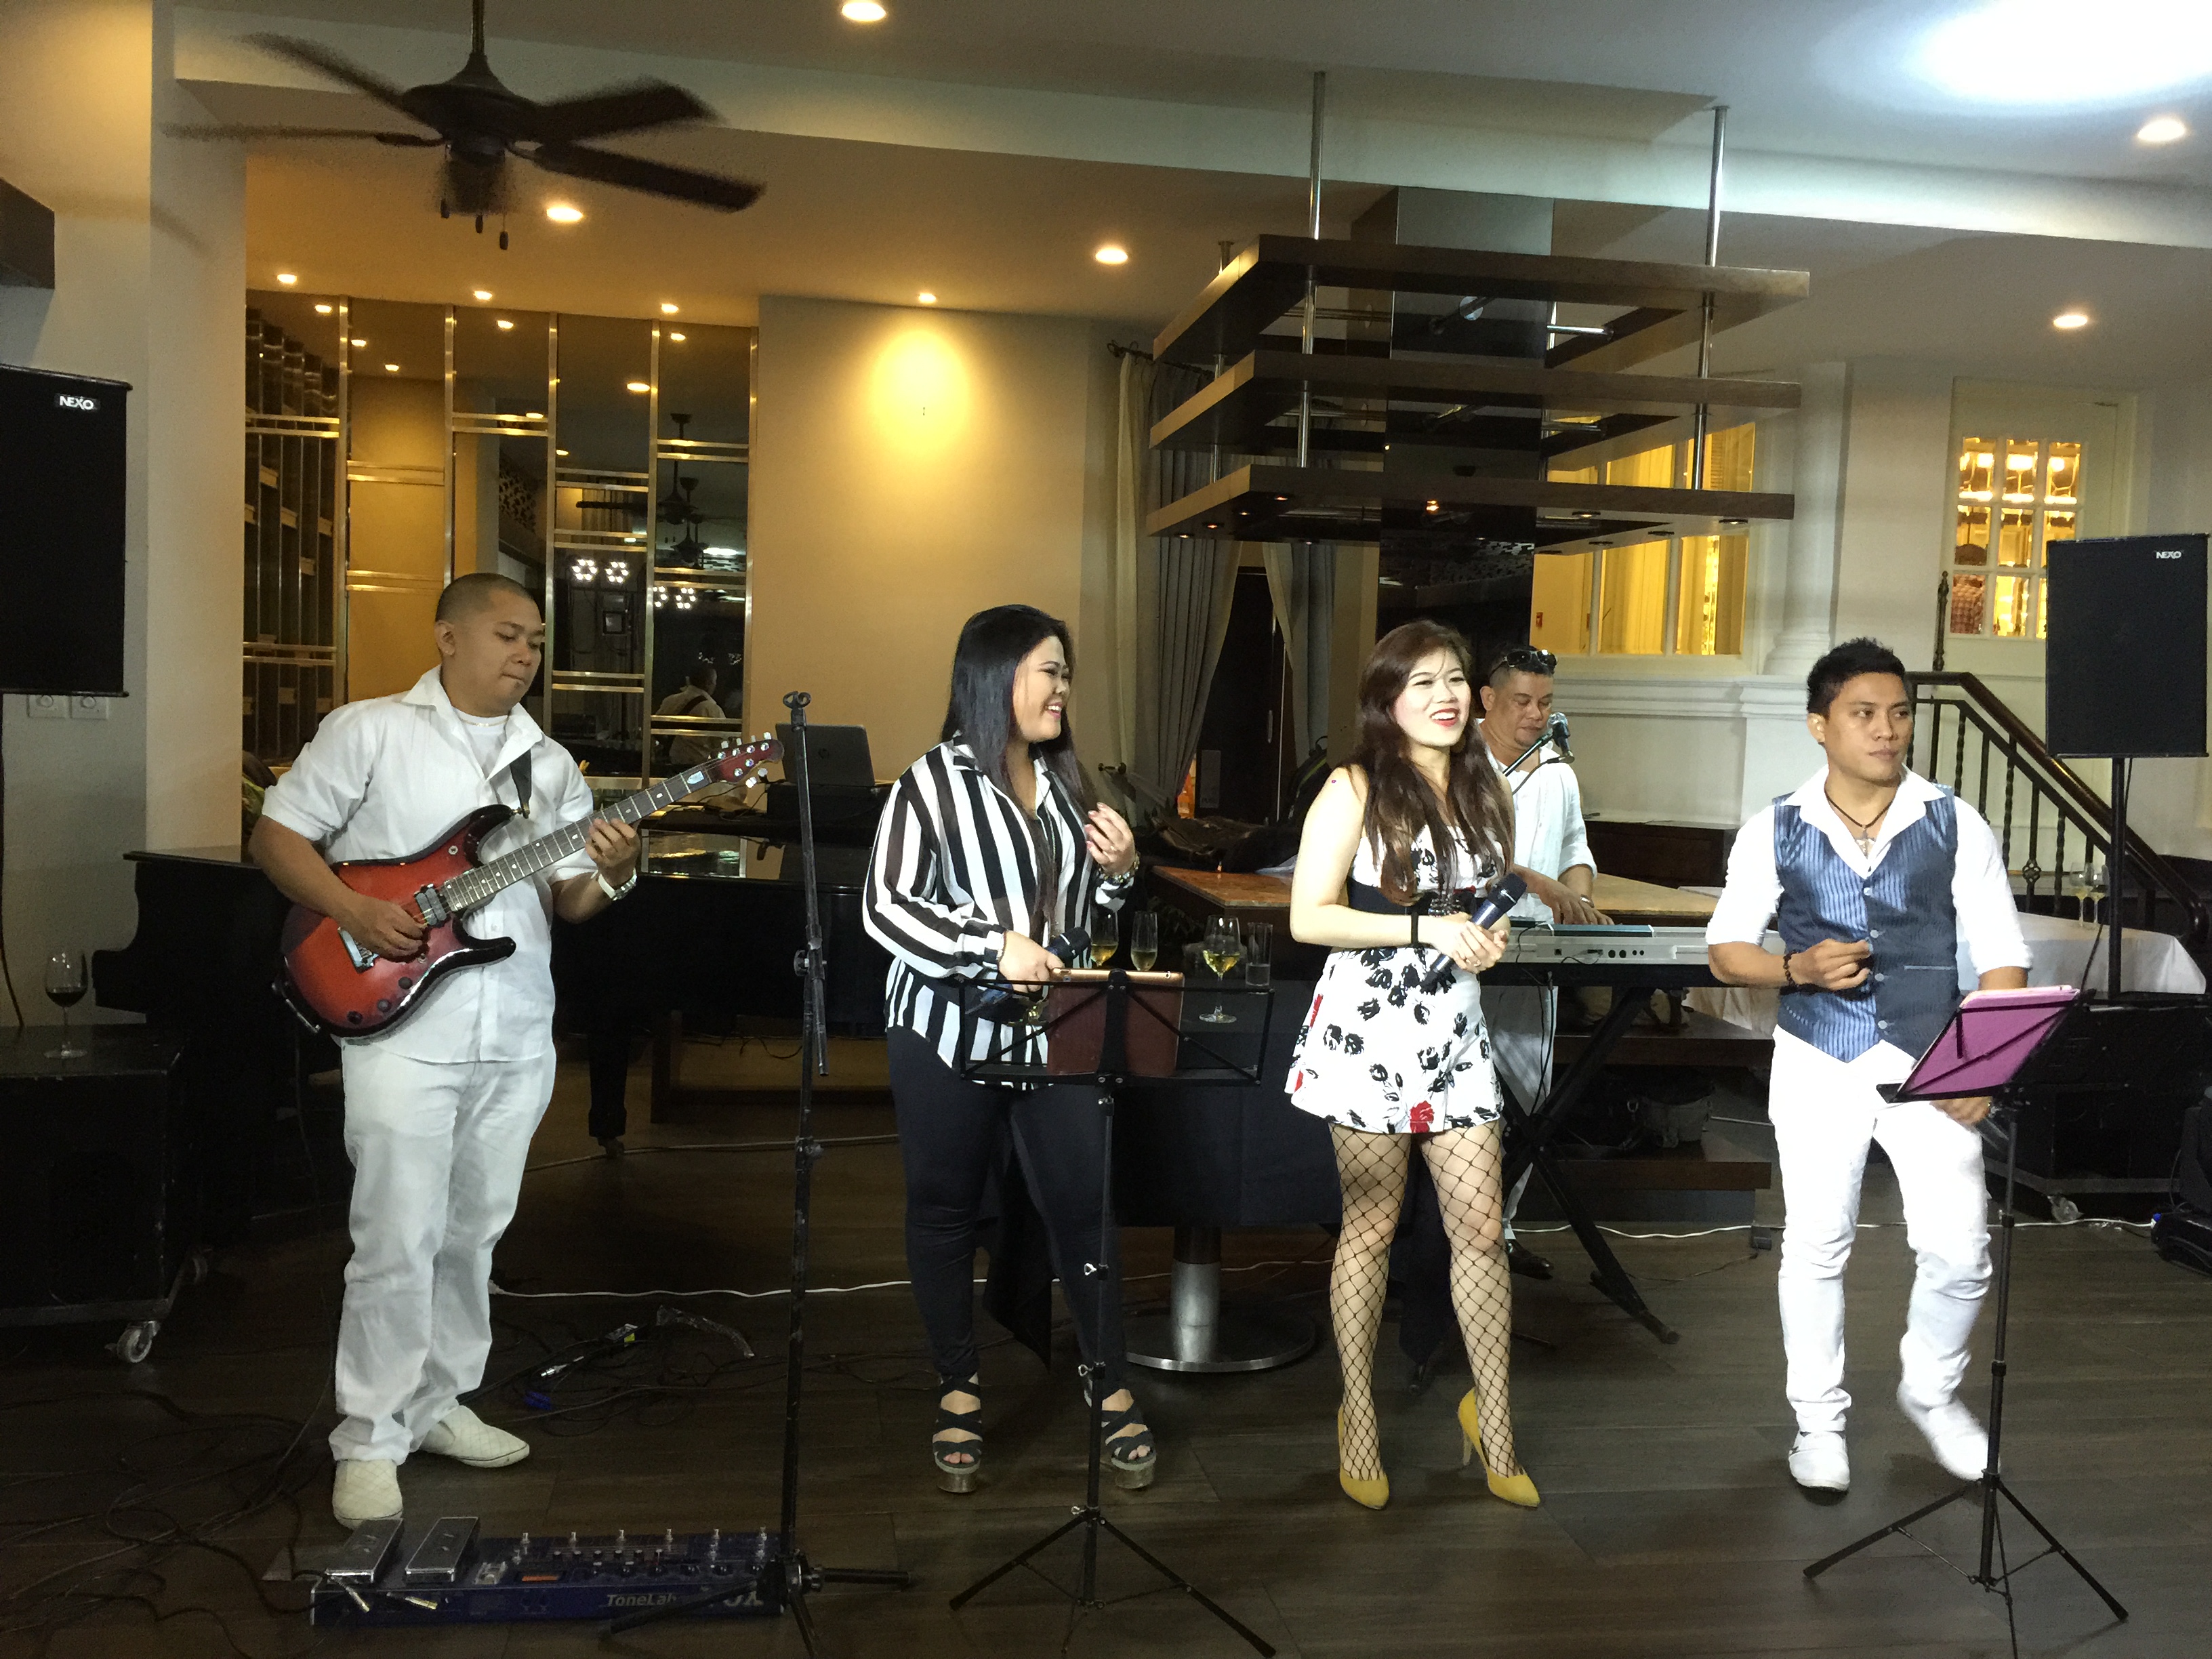 HoaBinh Events cung cấp dịch vụ cho thuê ban nhạc Philippines uy tín chuyên nghiệp